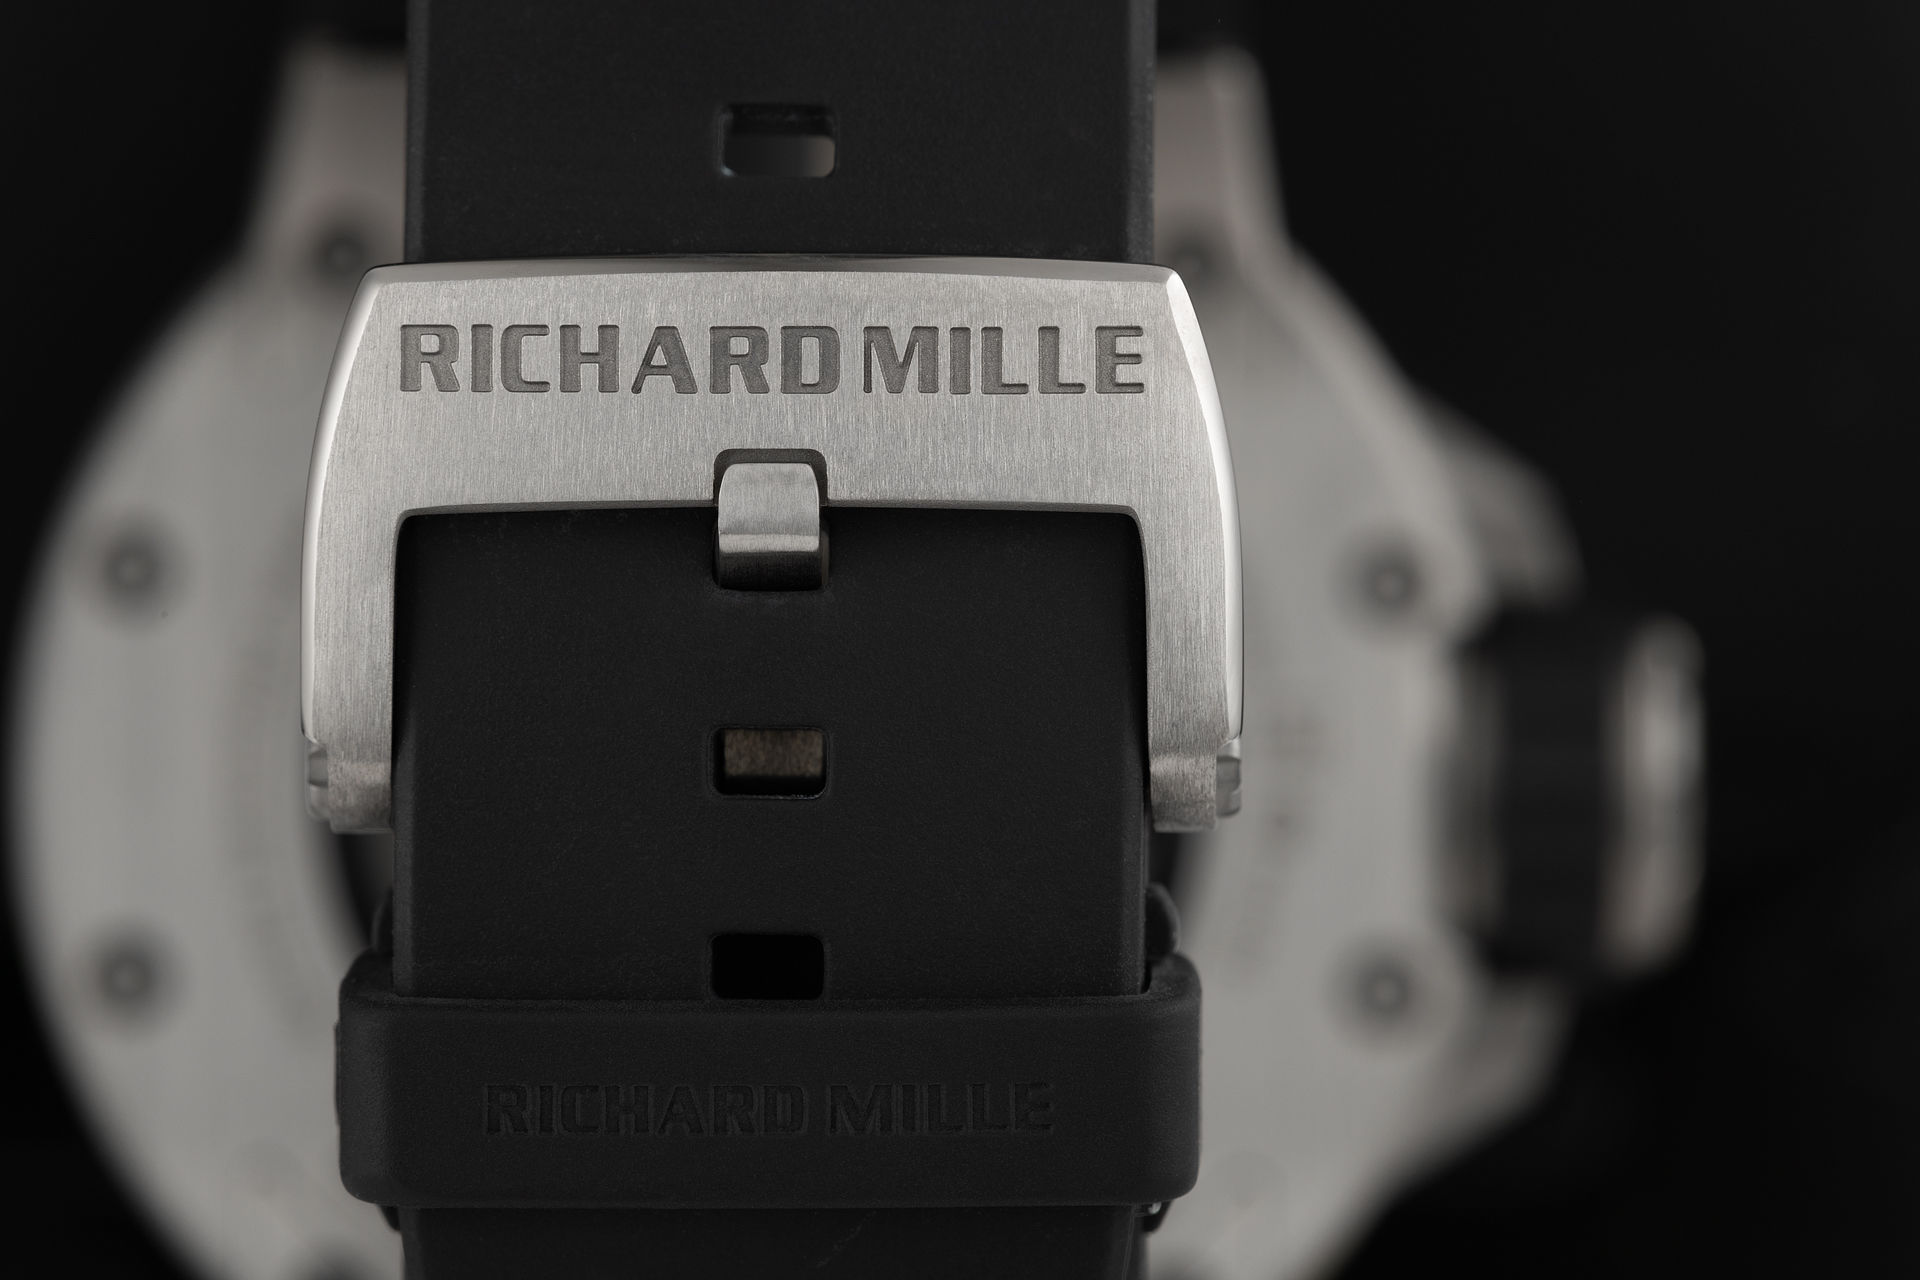 ref RM 028 AJ Ti | Full Set 'Titanium' | Richard Mille RM 028 AJ Ti